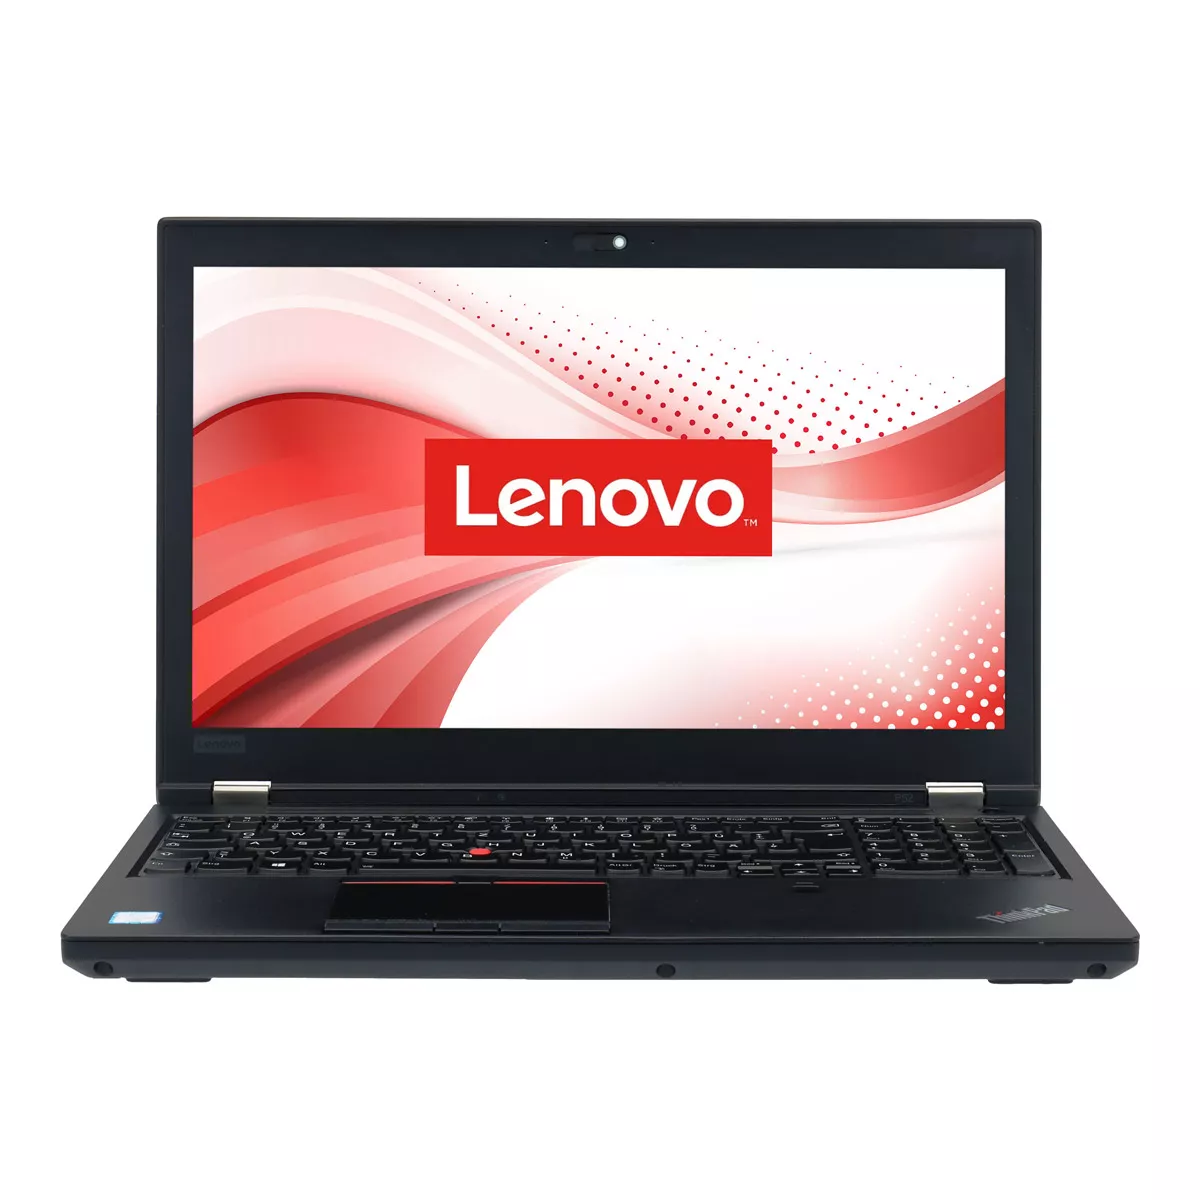 Lenovo ThinkPad P52 Core i7 8850H nVidia Quadro P2000M 32 GB 500 GB M.2 SSD Webcam A+